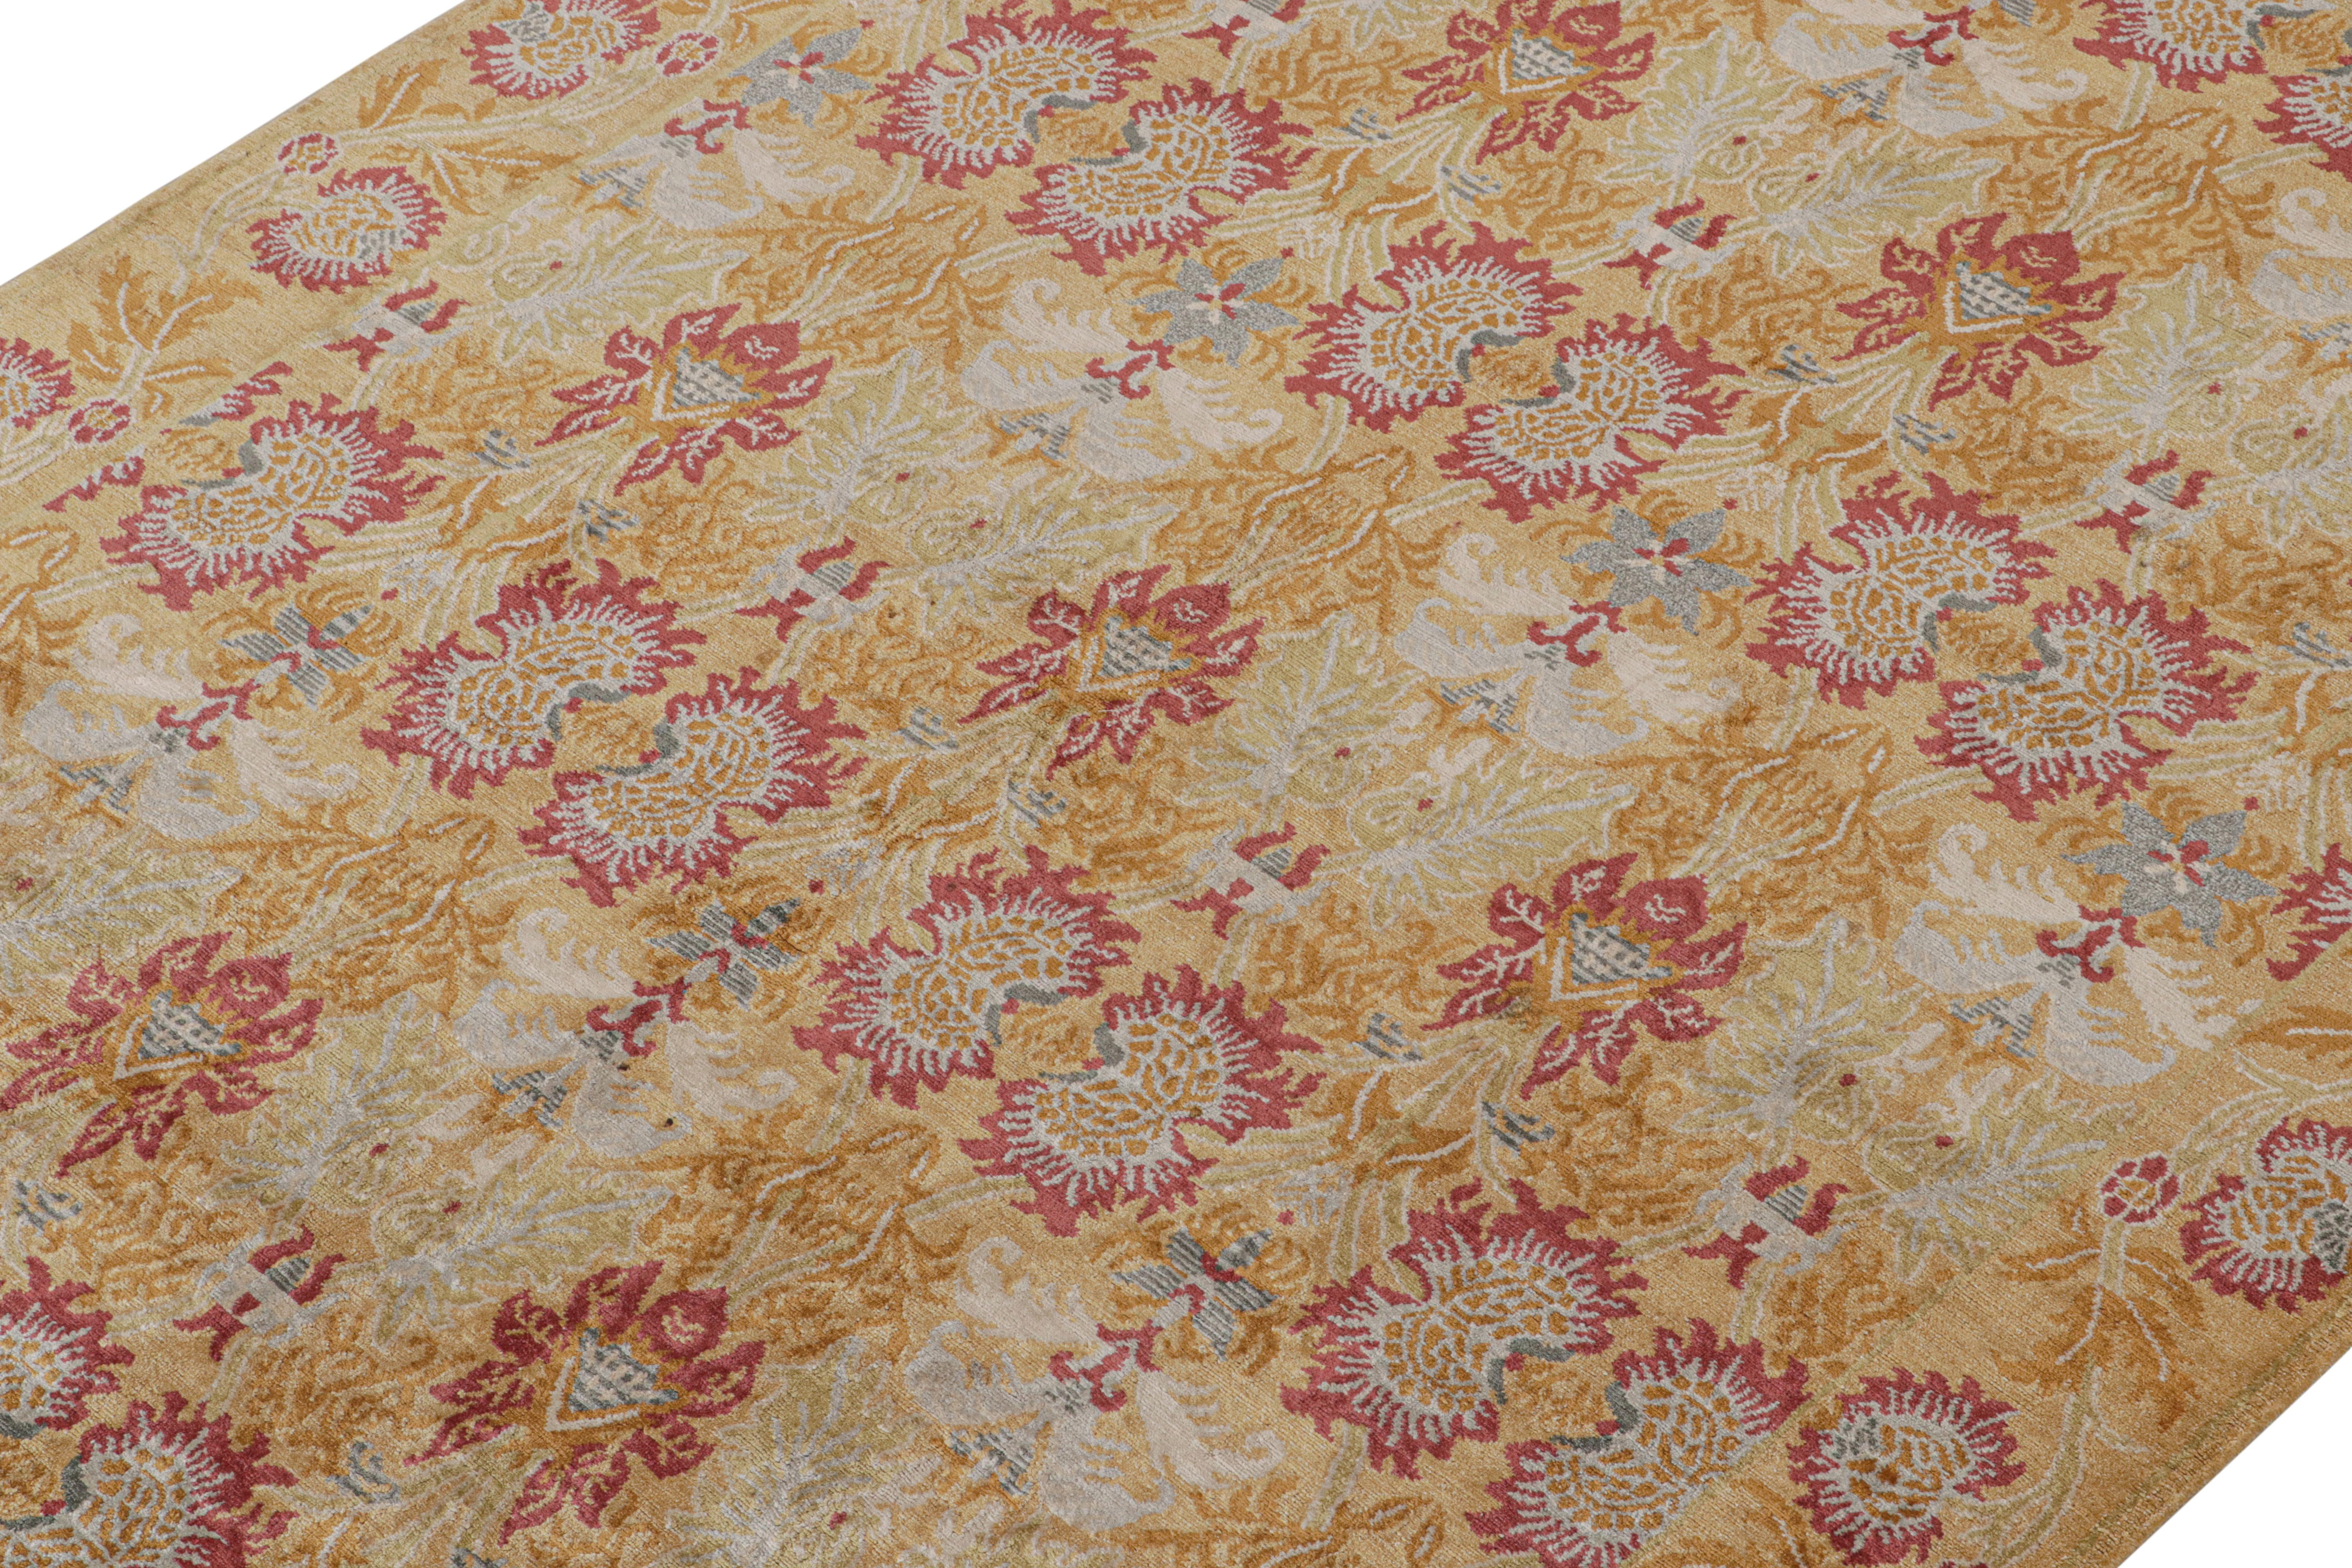 Dieser moderne, handgeknüpfte Seidenteppich im Format 6x9 ist eine neue Ergänzung der europäischen Teppichkollektion von Rug & Kilim. 

Über das Design: 

Unser handgeknüpftes Seidendesign 